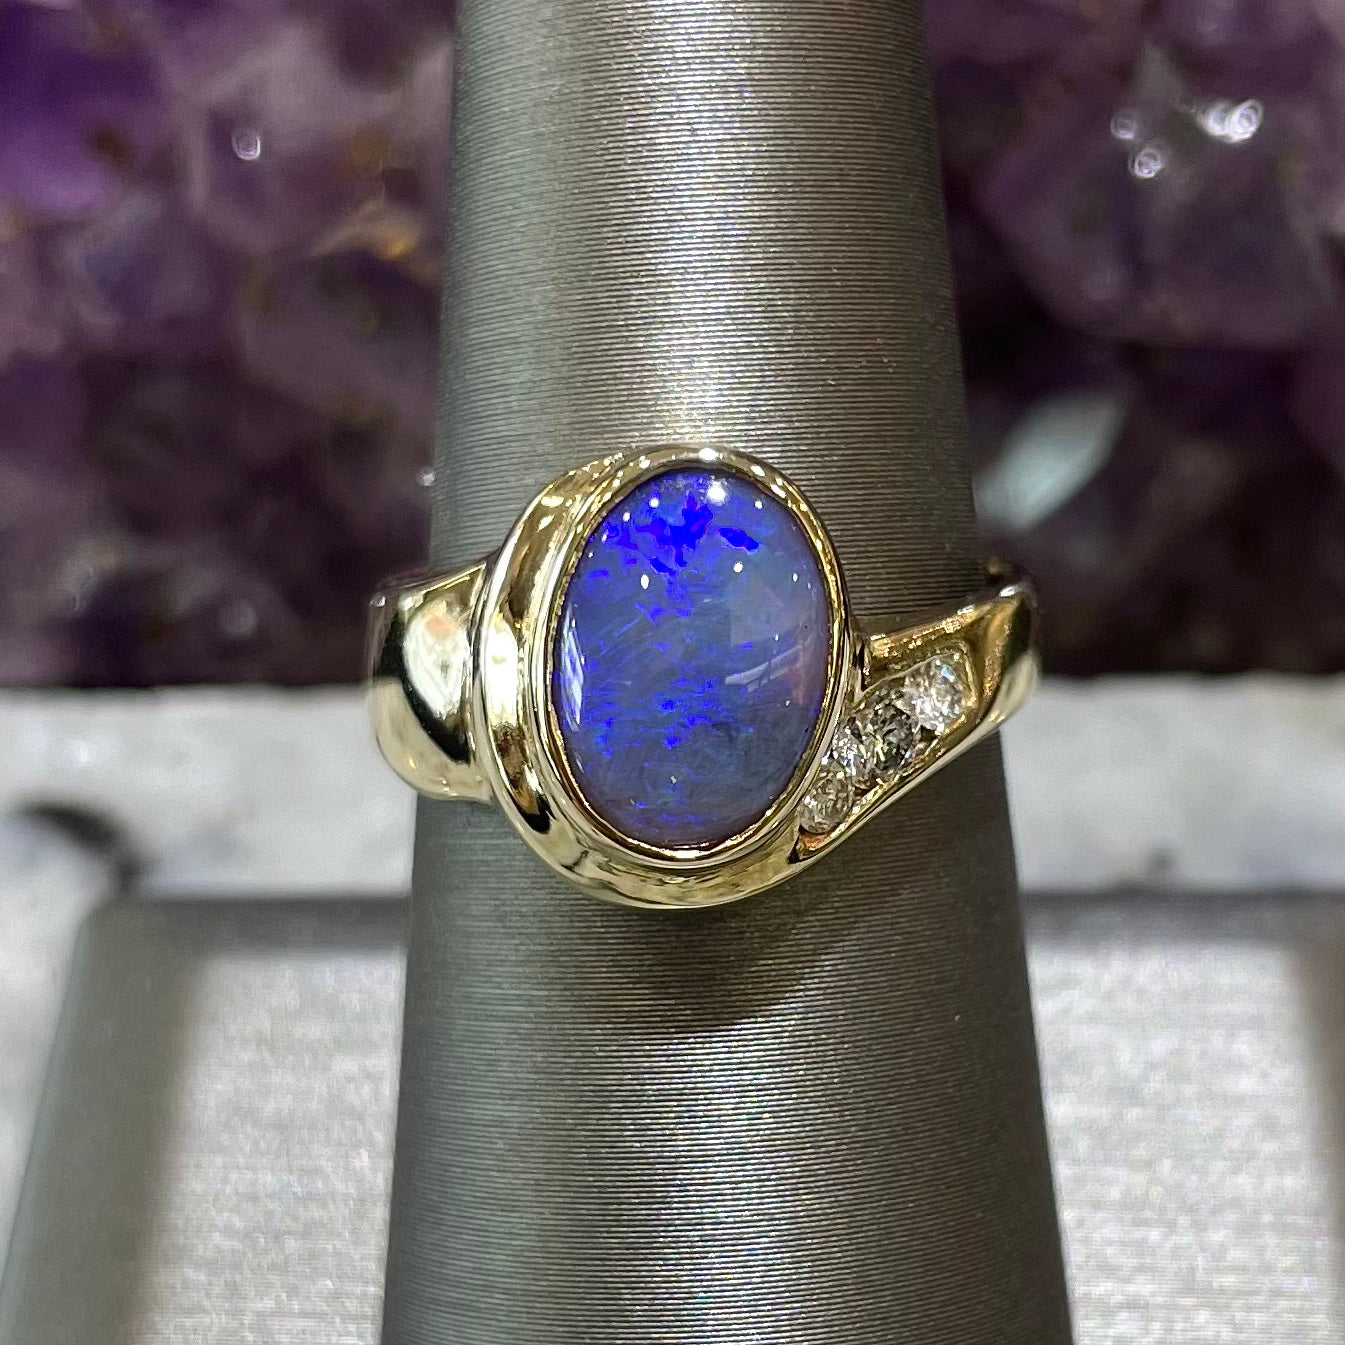 Black Opal Ring 5446 - Australian Opal Jewelry - Opal Pendants, Opal Rings,  Opal Bracelets & Earrings